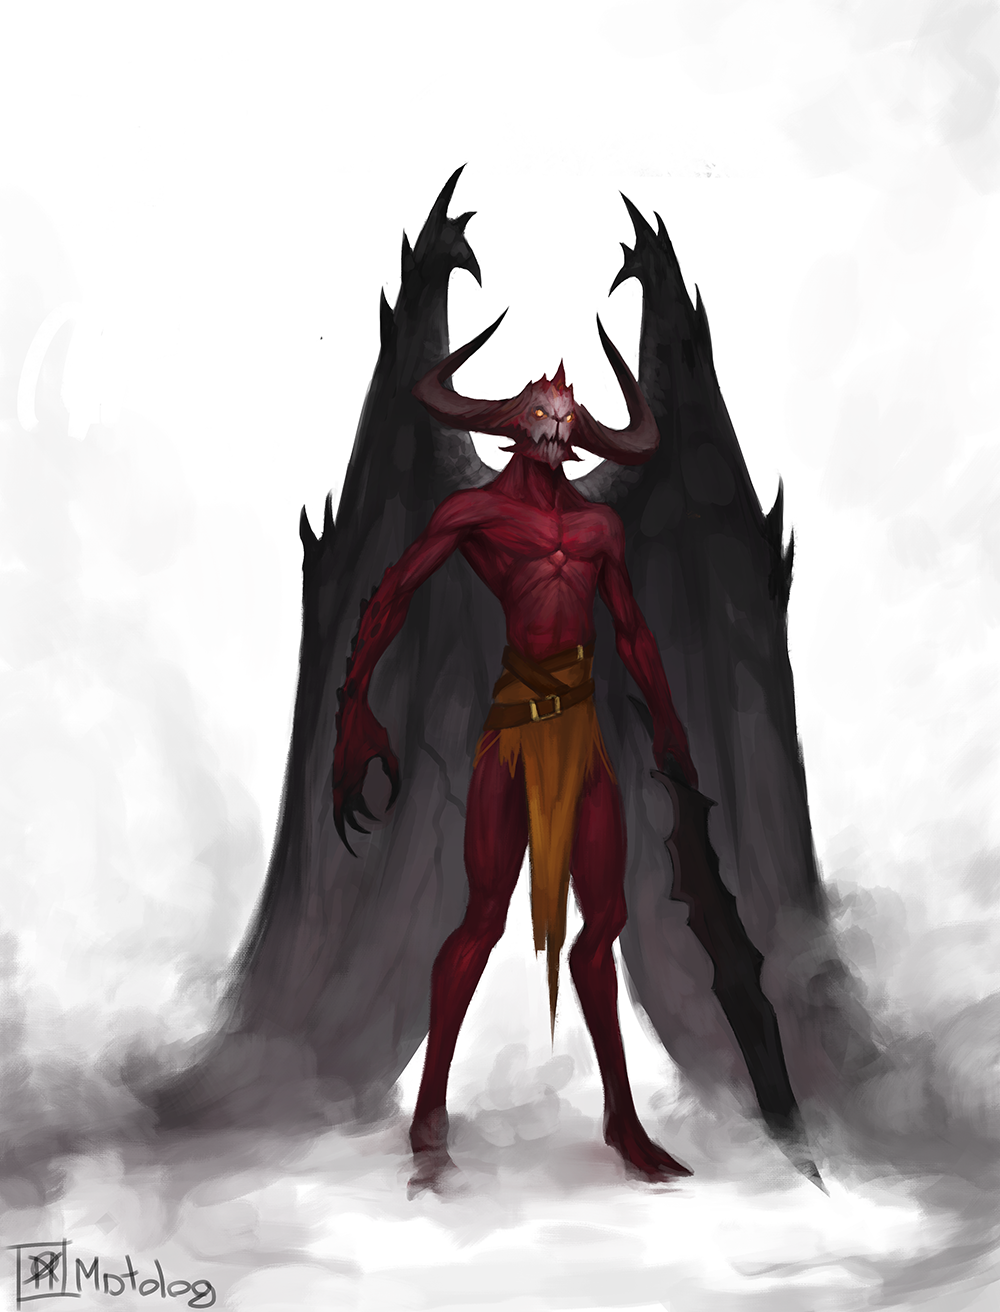 Demon's Souls bosses by DigitalCleo on DeviantArt